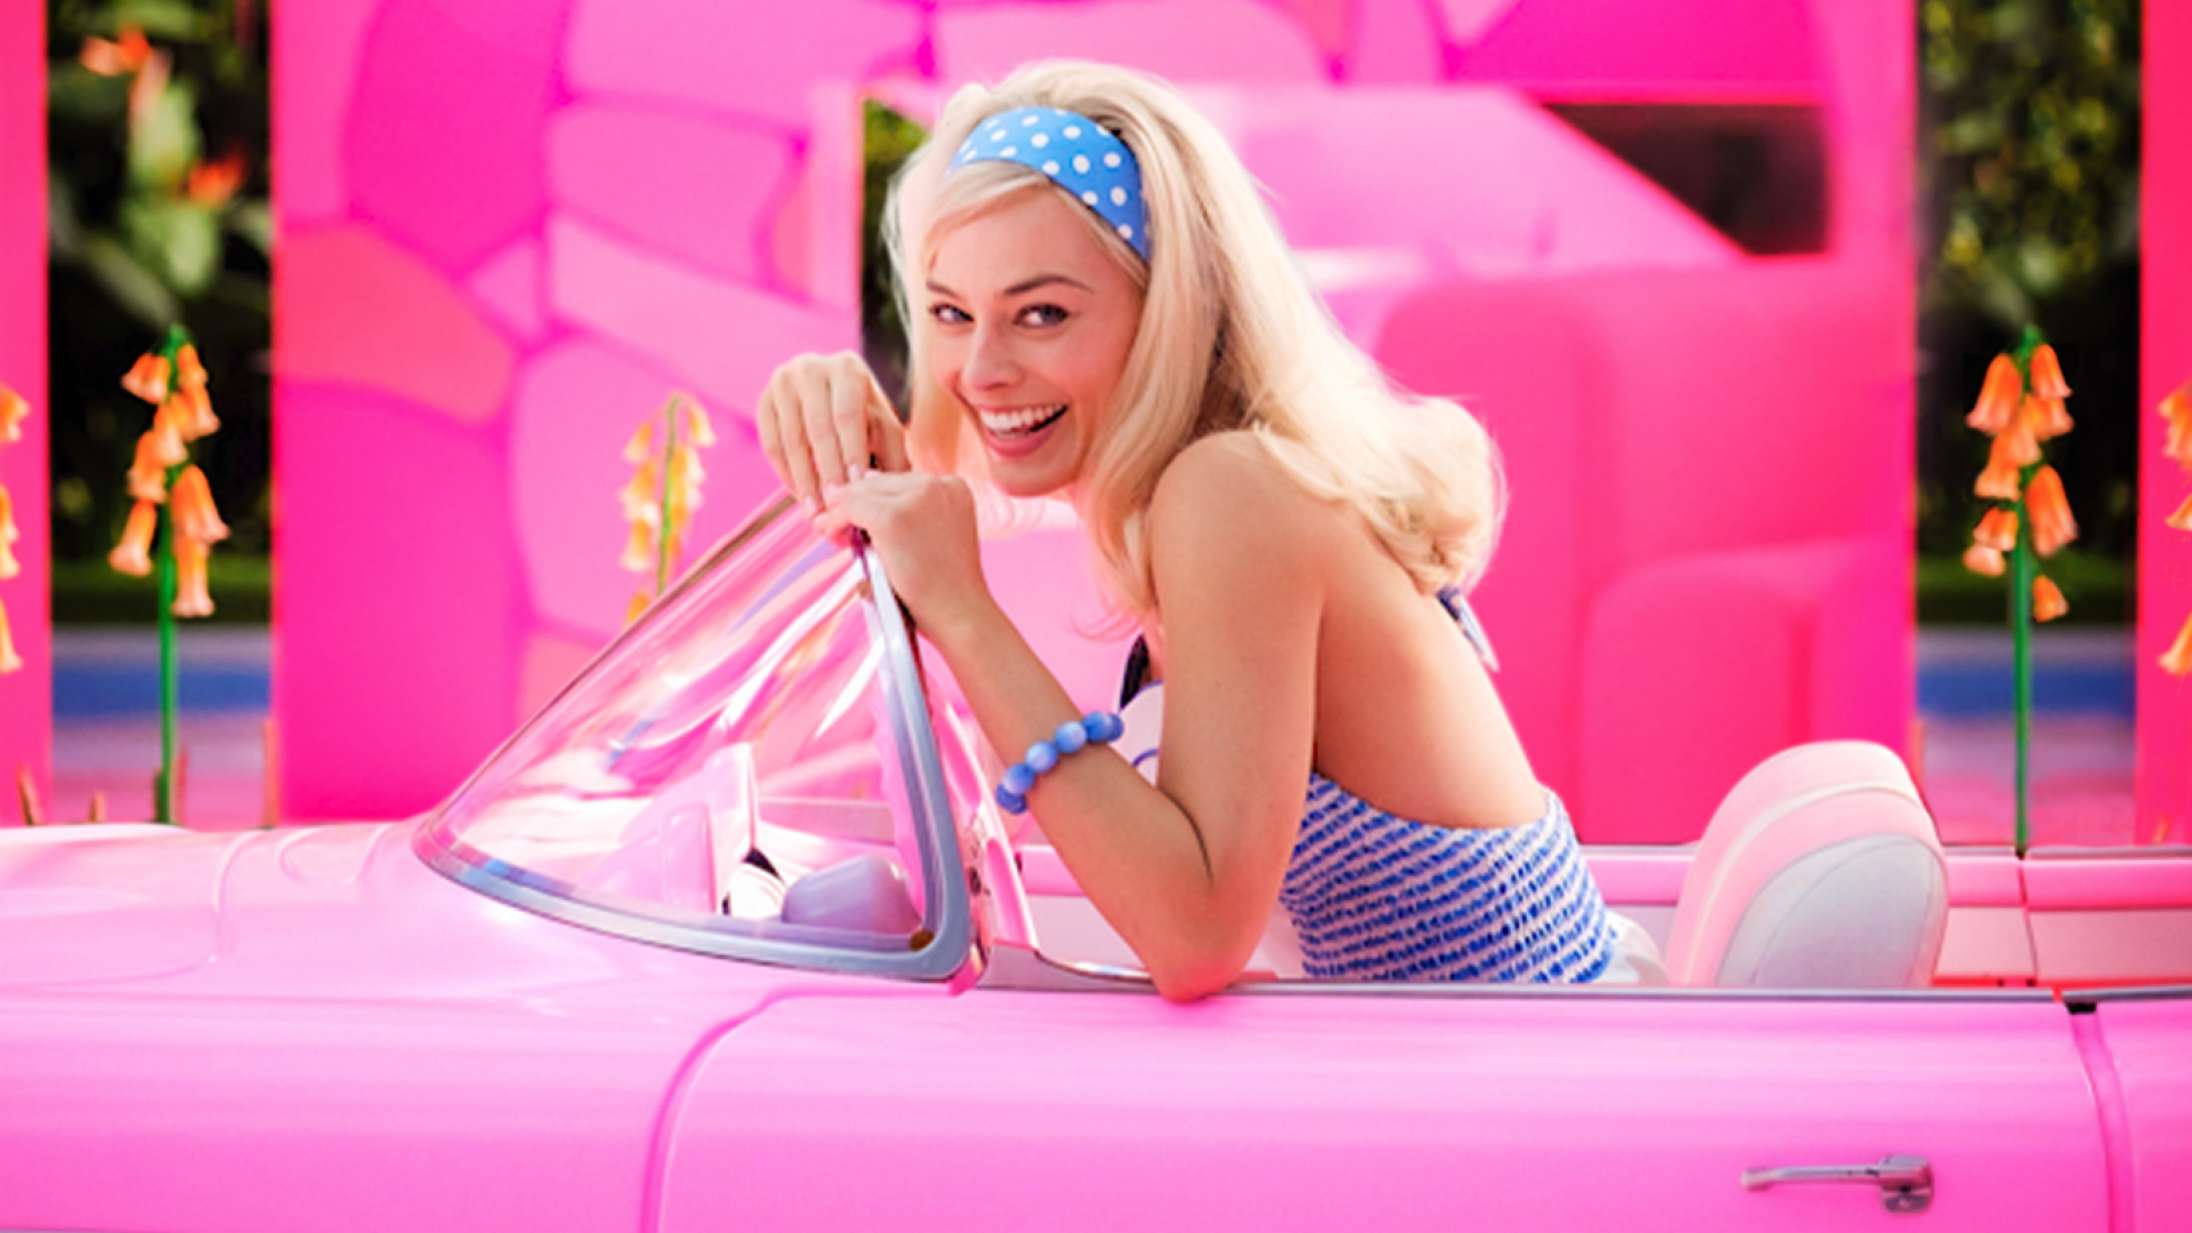 But why? Kommende ‘Barbie’-film må klare sig uden Aqua